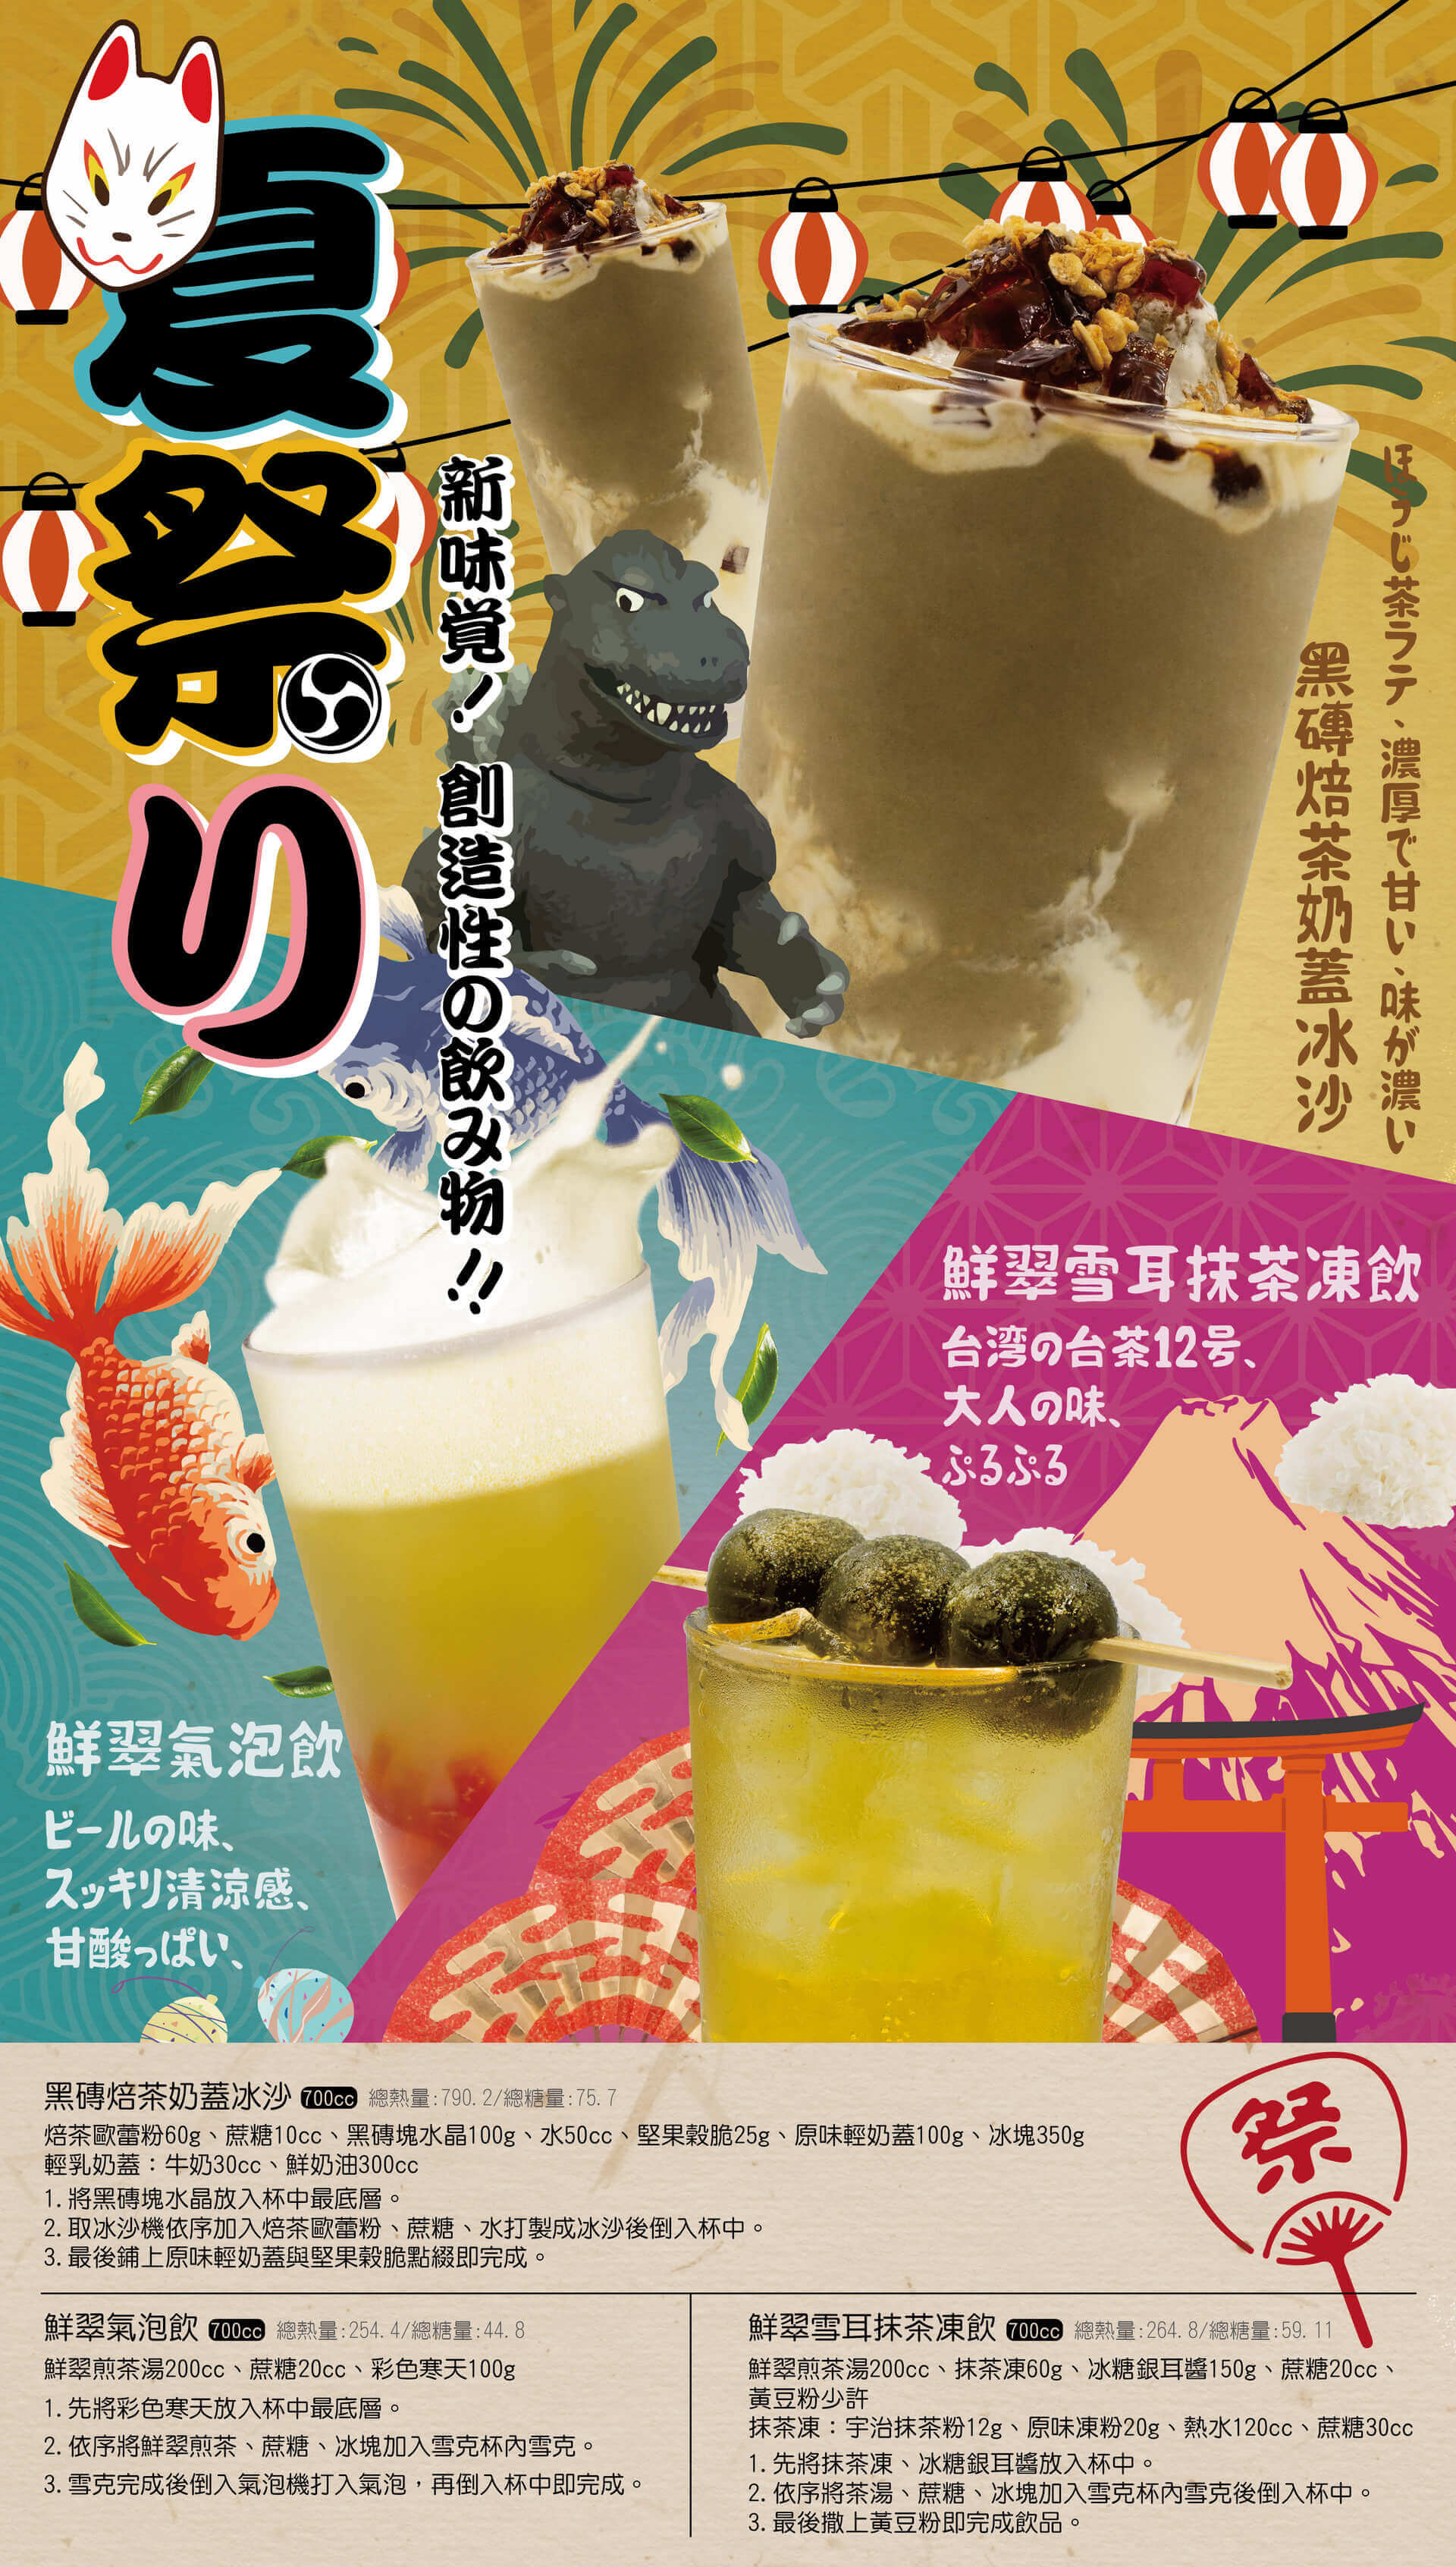 夏祭り—新味覚! 創造性の飲み物!!